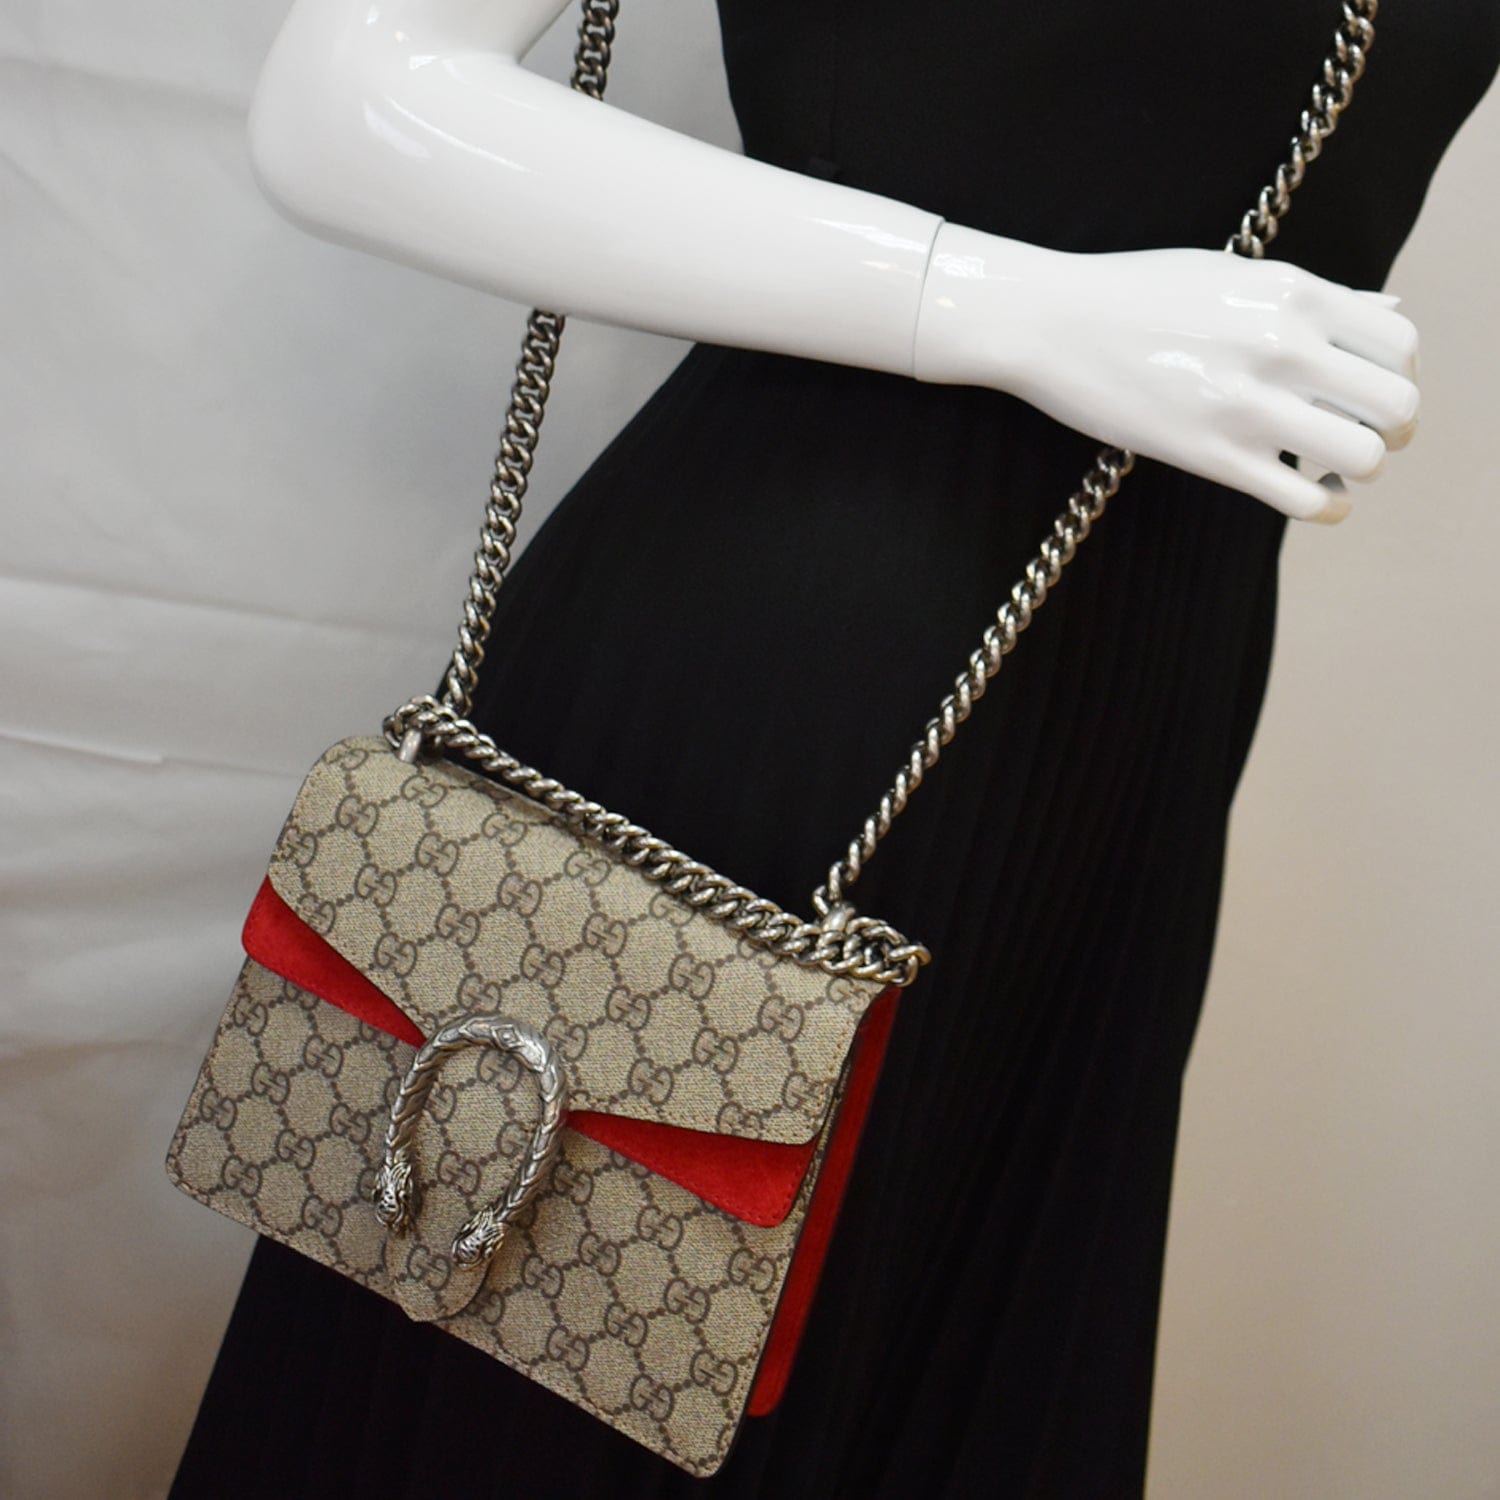 GG Supreme Canvas Mini Bag in Beige - Gucci